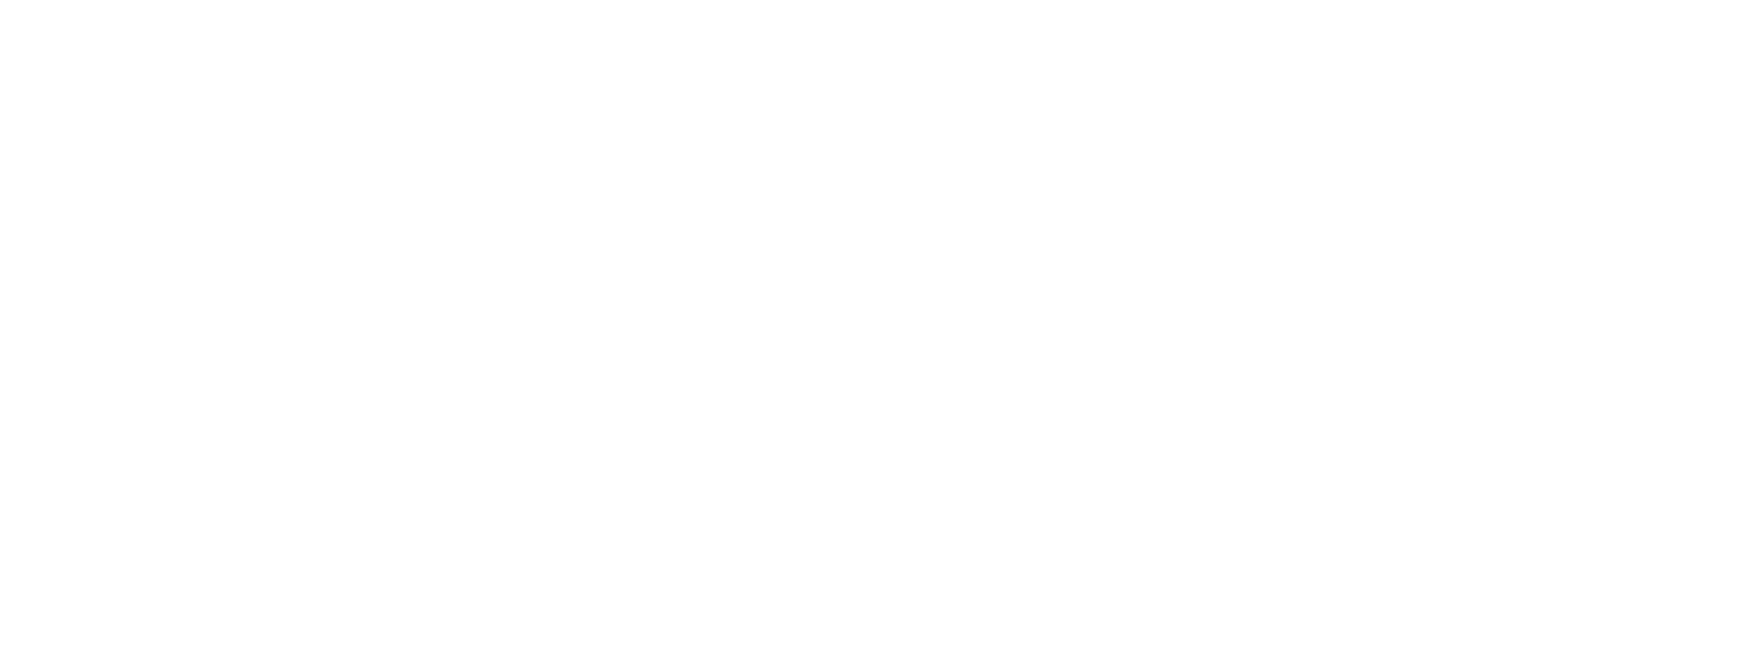 PowerON Logo